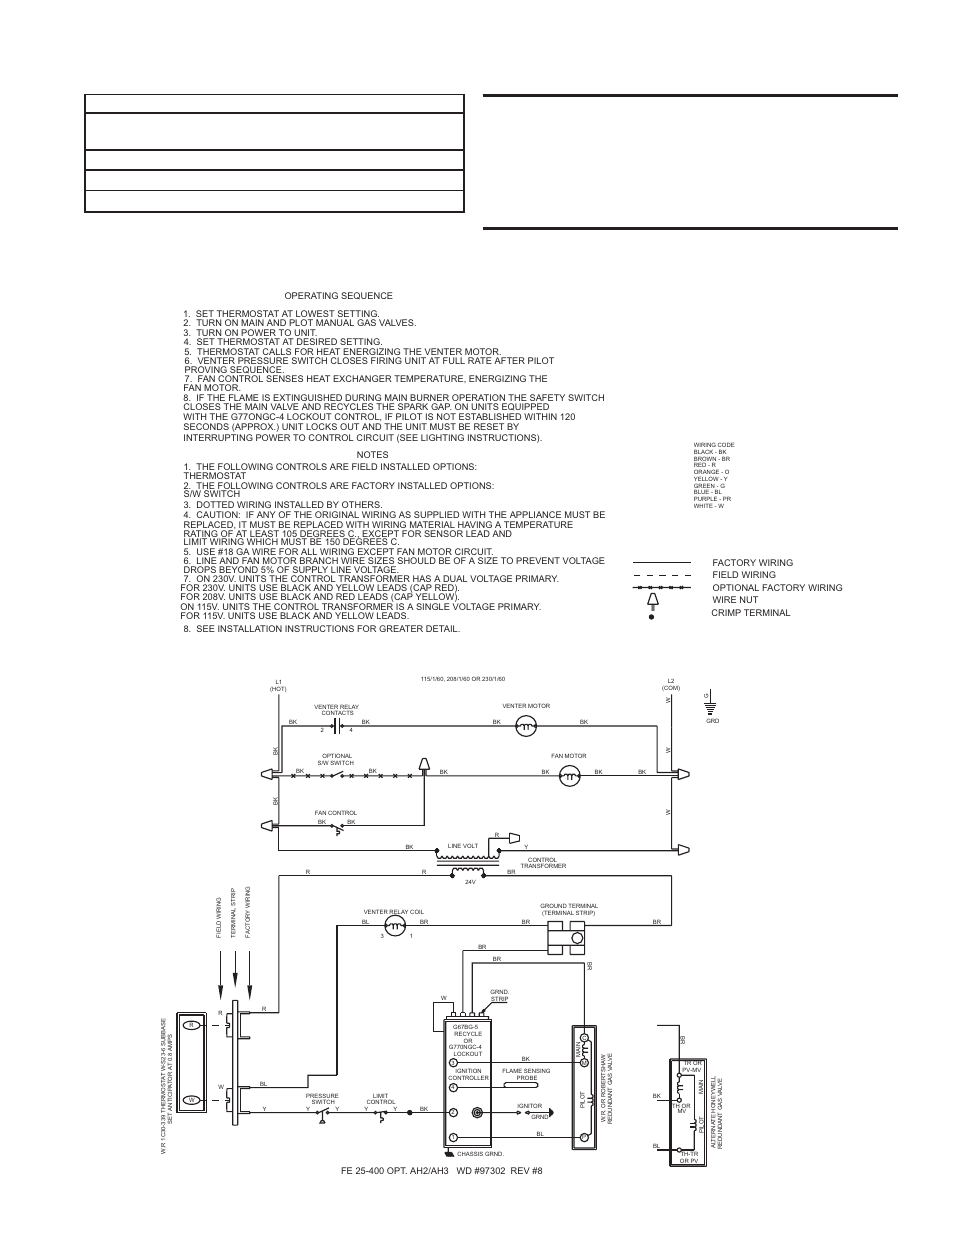 Modine Unit Heater Wiring Diagram from schematron.org